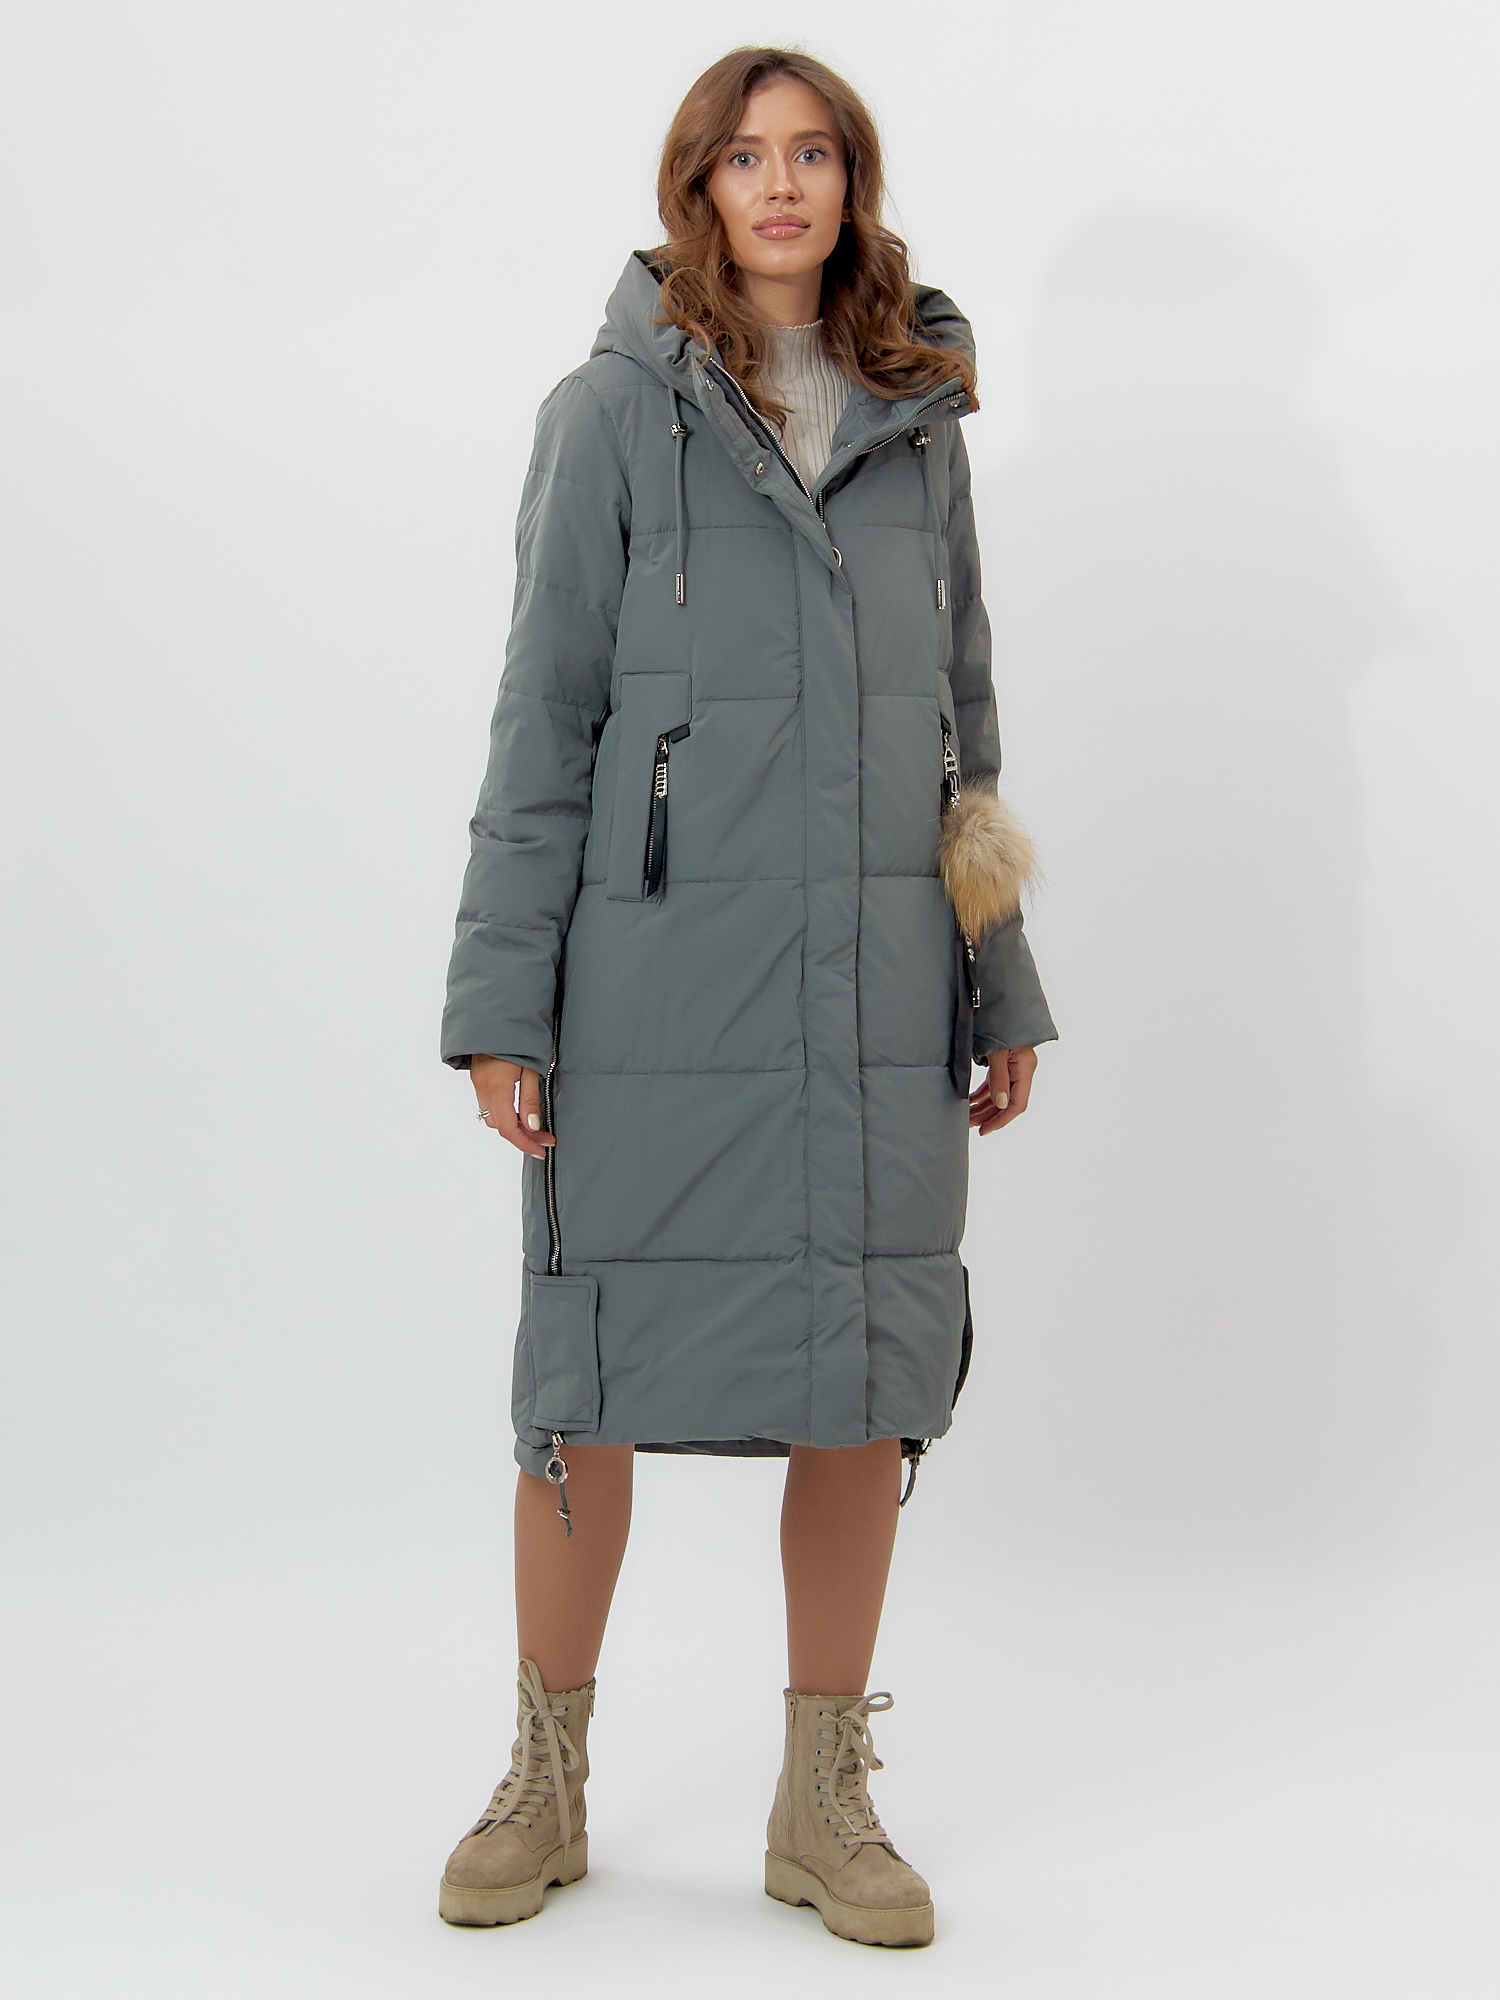 Купить Пальто утепленное женское зимние цвета хаки 11207Kh